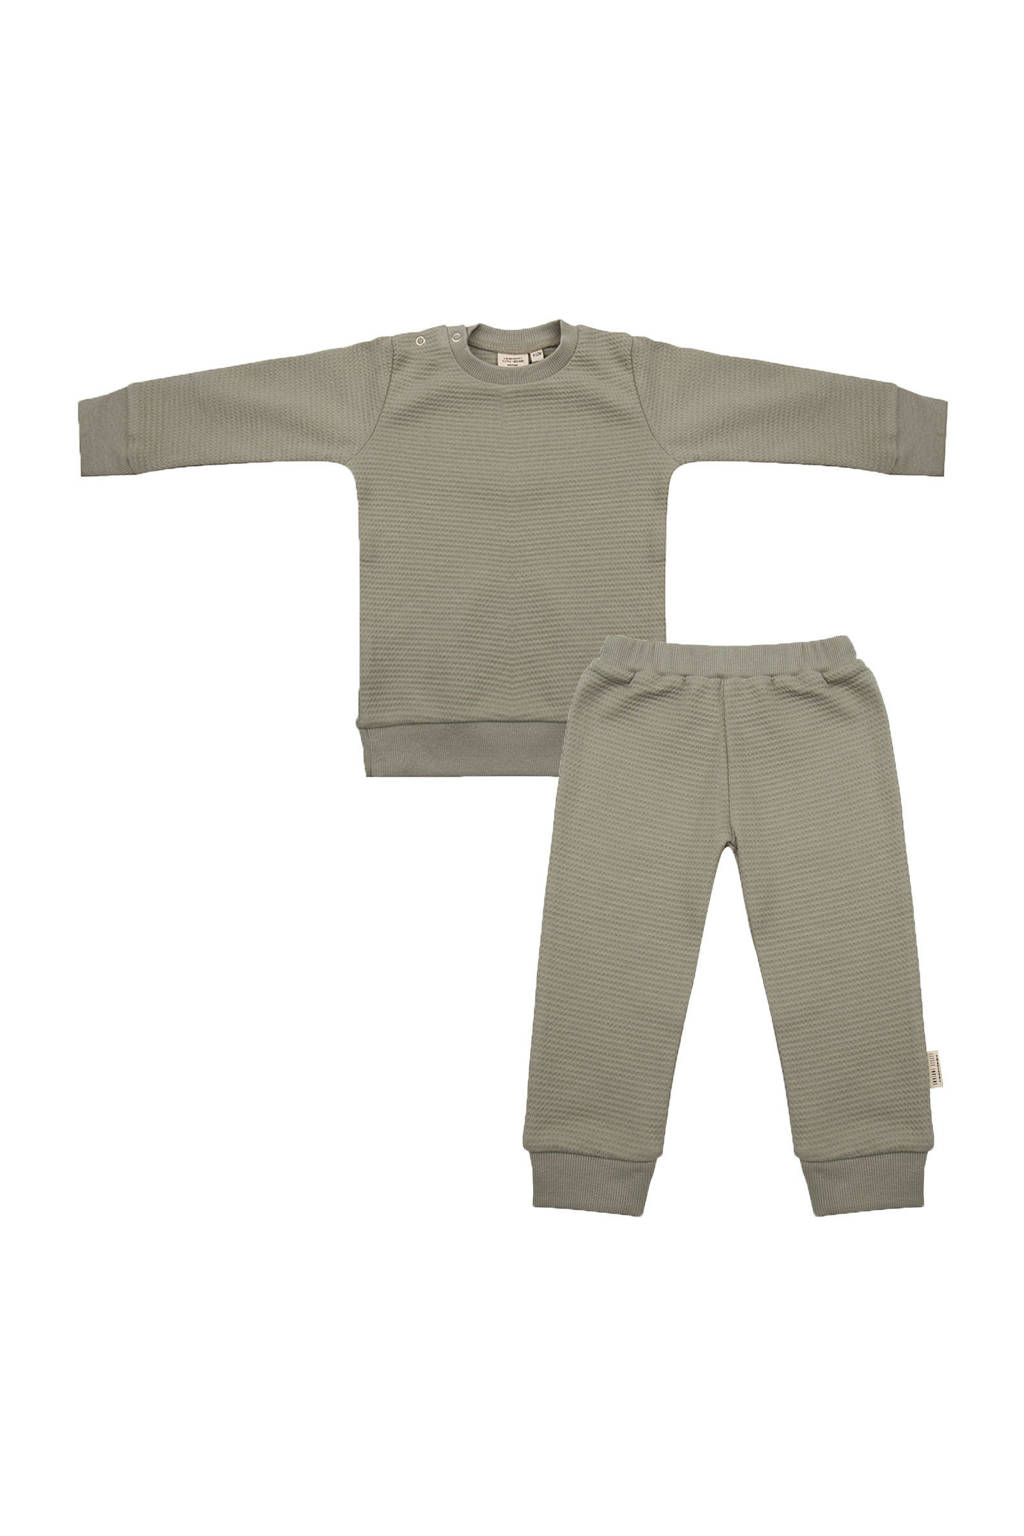 Little Indians   pyjama met structuur grijsgroen, Grijsgroen